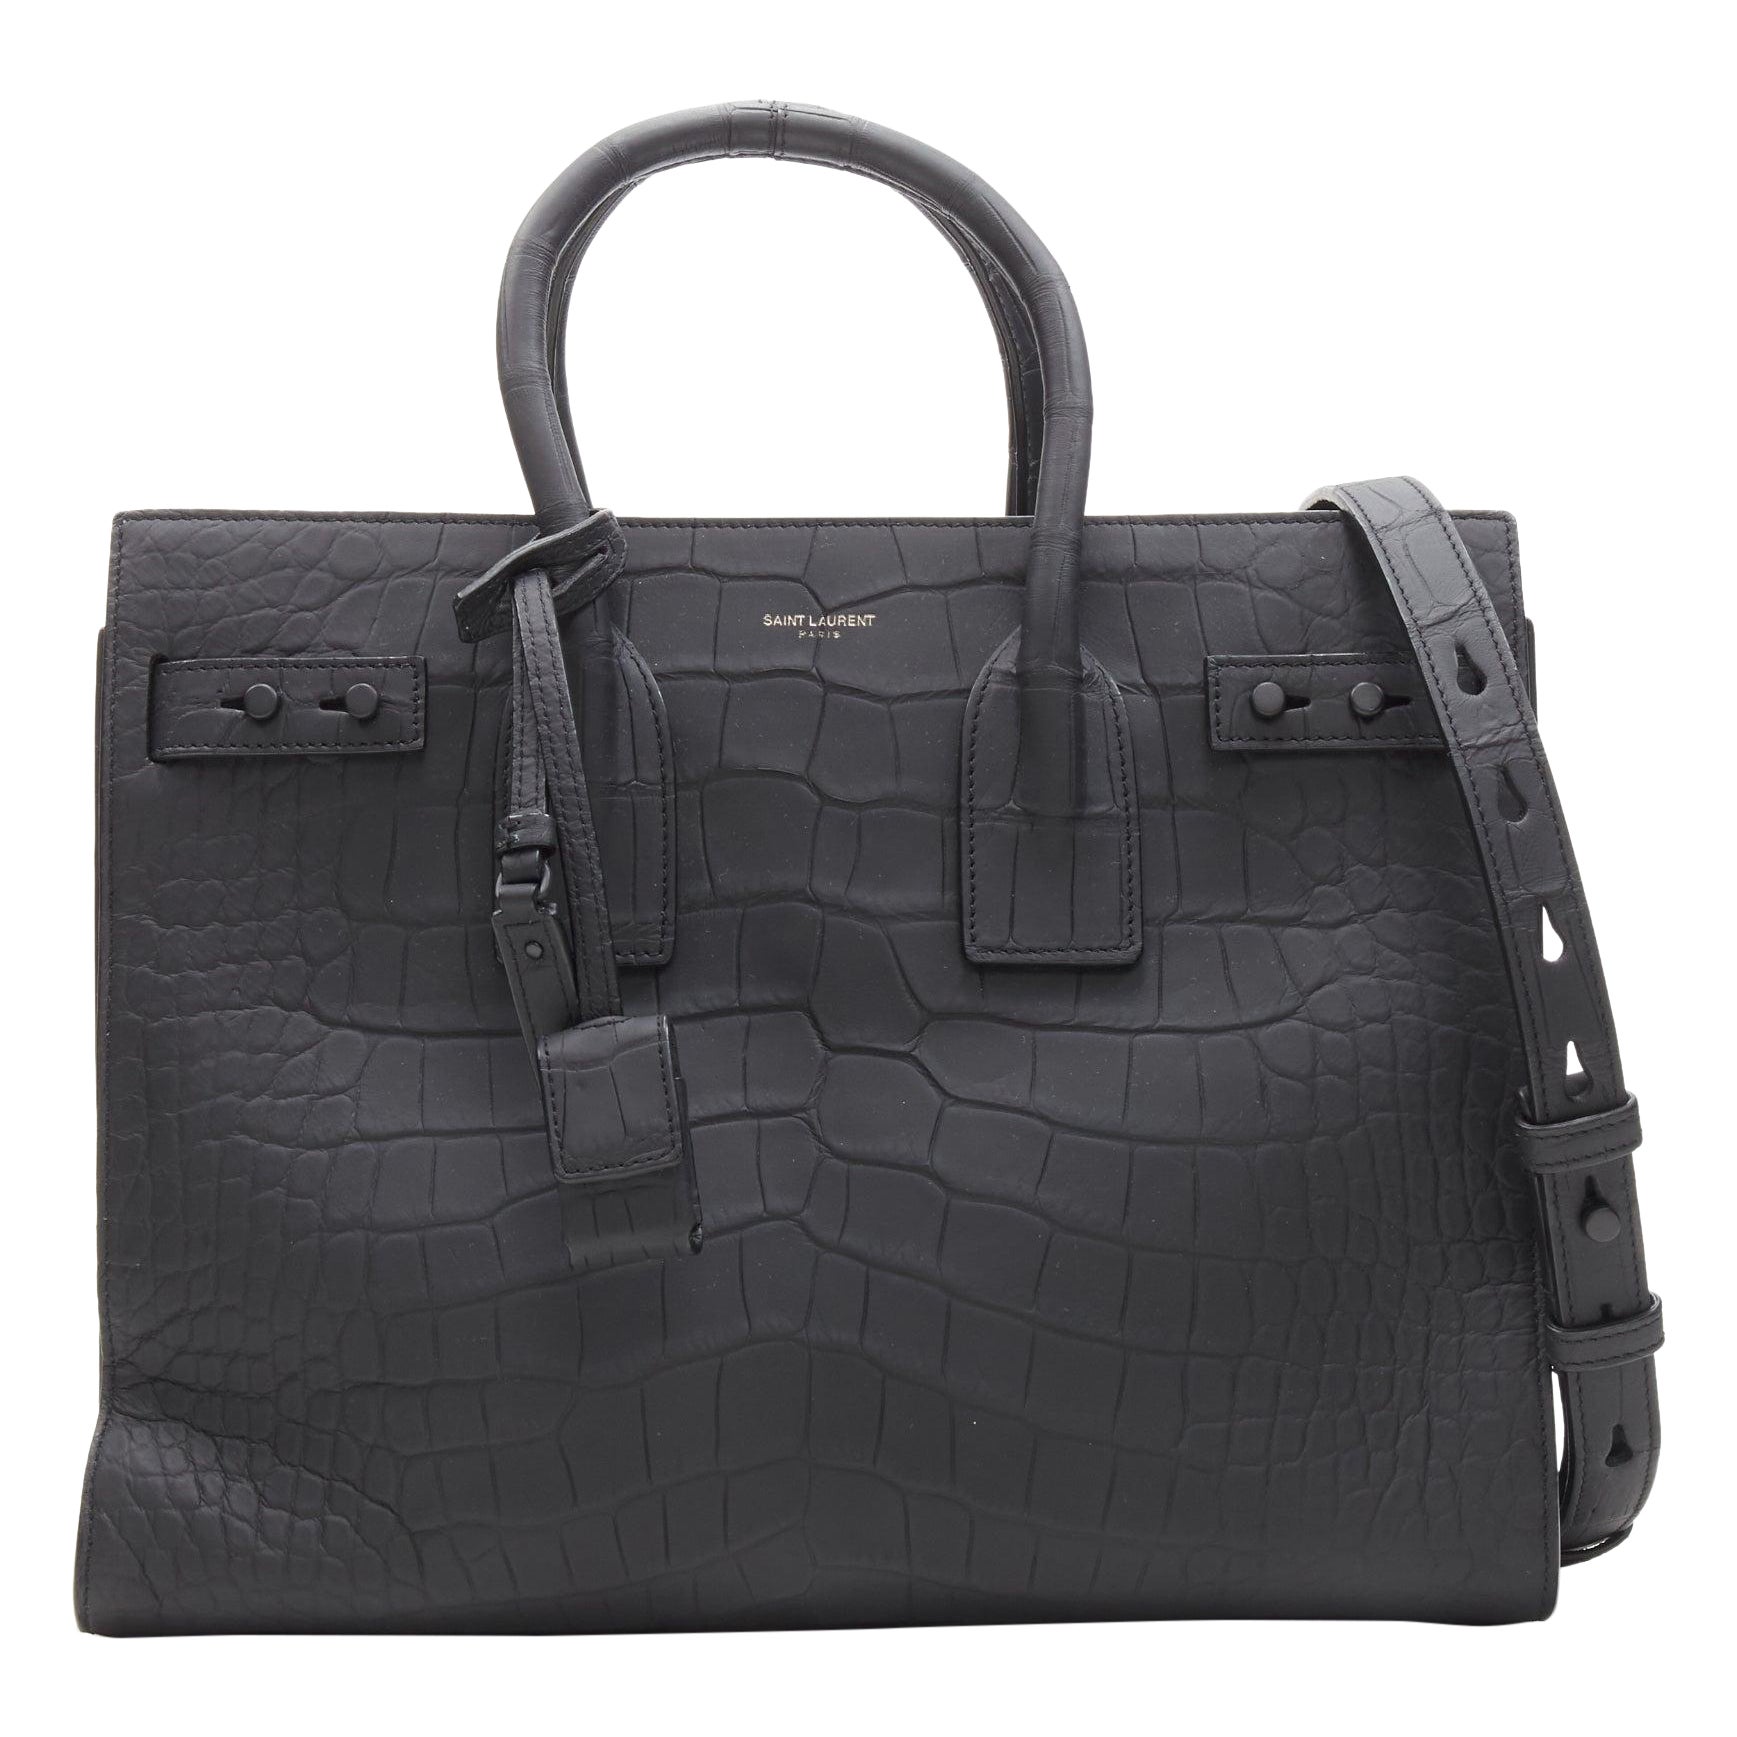 SAINT LAURENT Small Sac De Jour matte black stamped croc tote bag For Sale